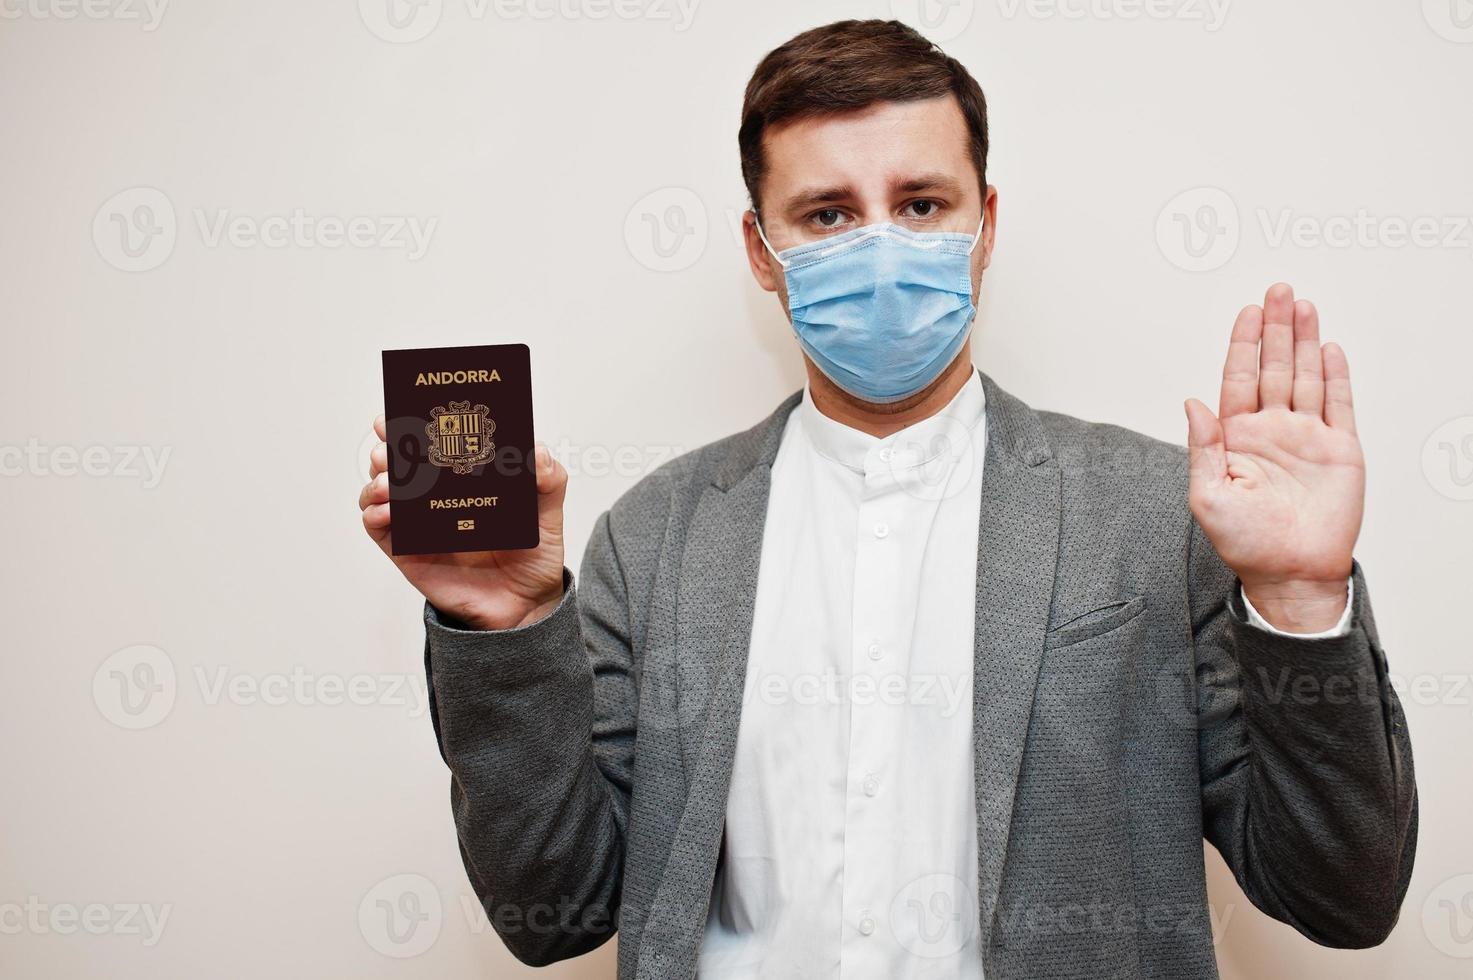 homem europeu com roupa formal e máscara facial, mostre o passaporte de andorra com a mão do sinal de stop. bloqueio de coronavírus no conceito de país da europa. foto